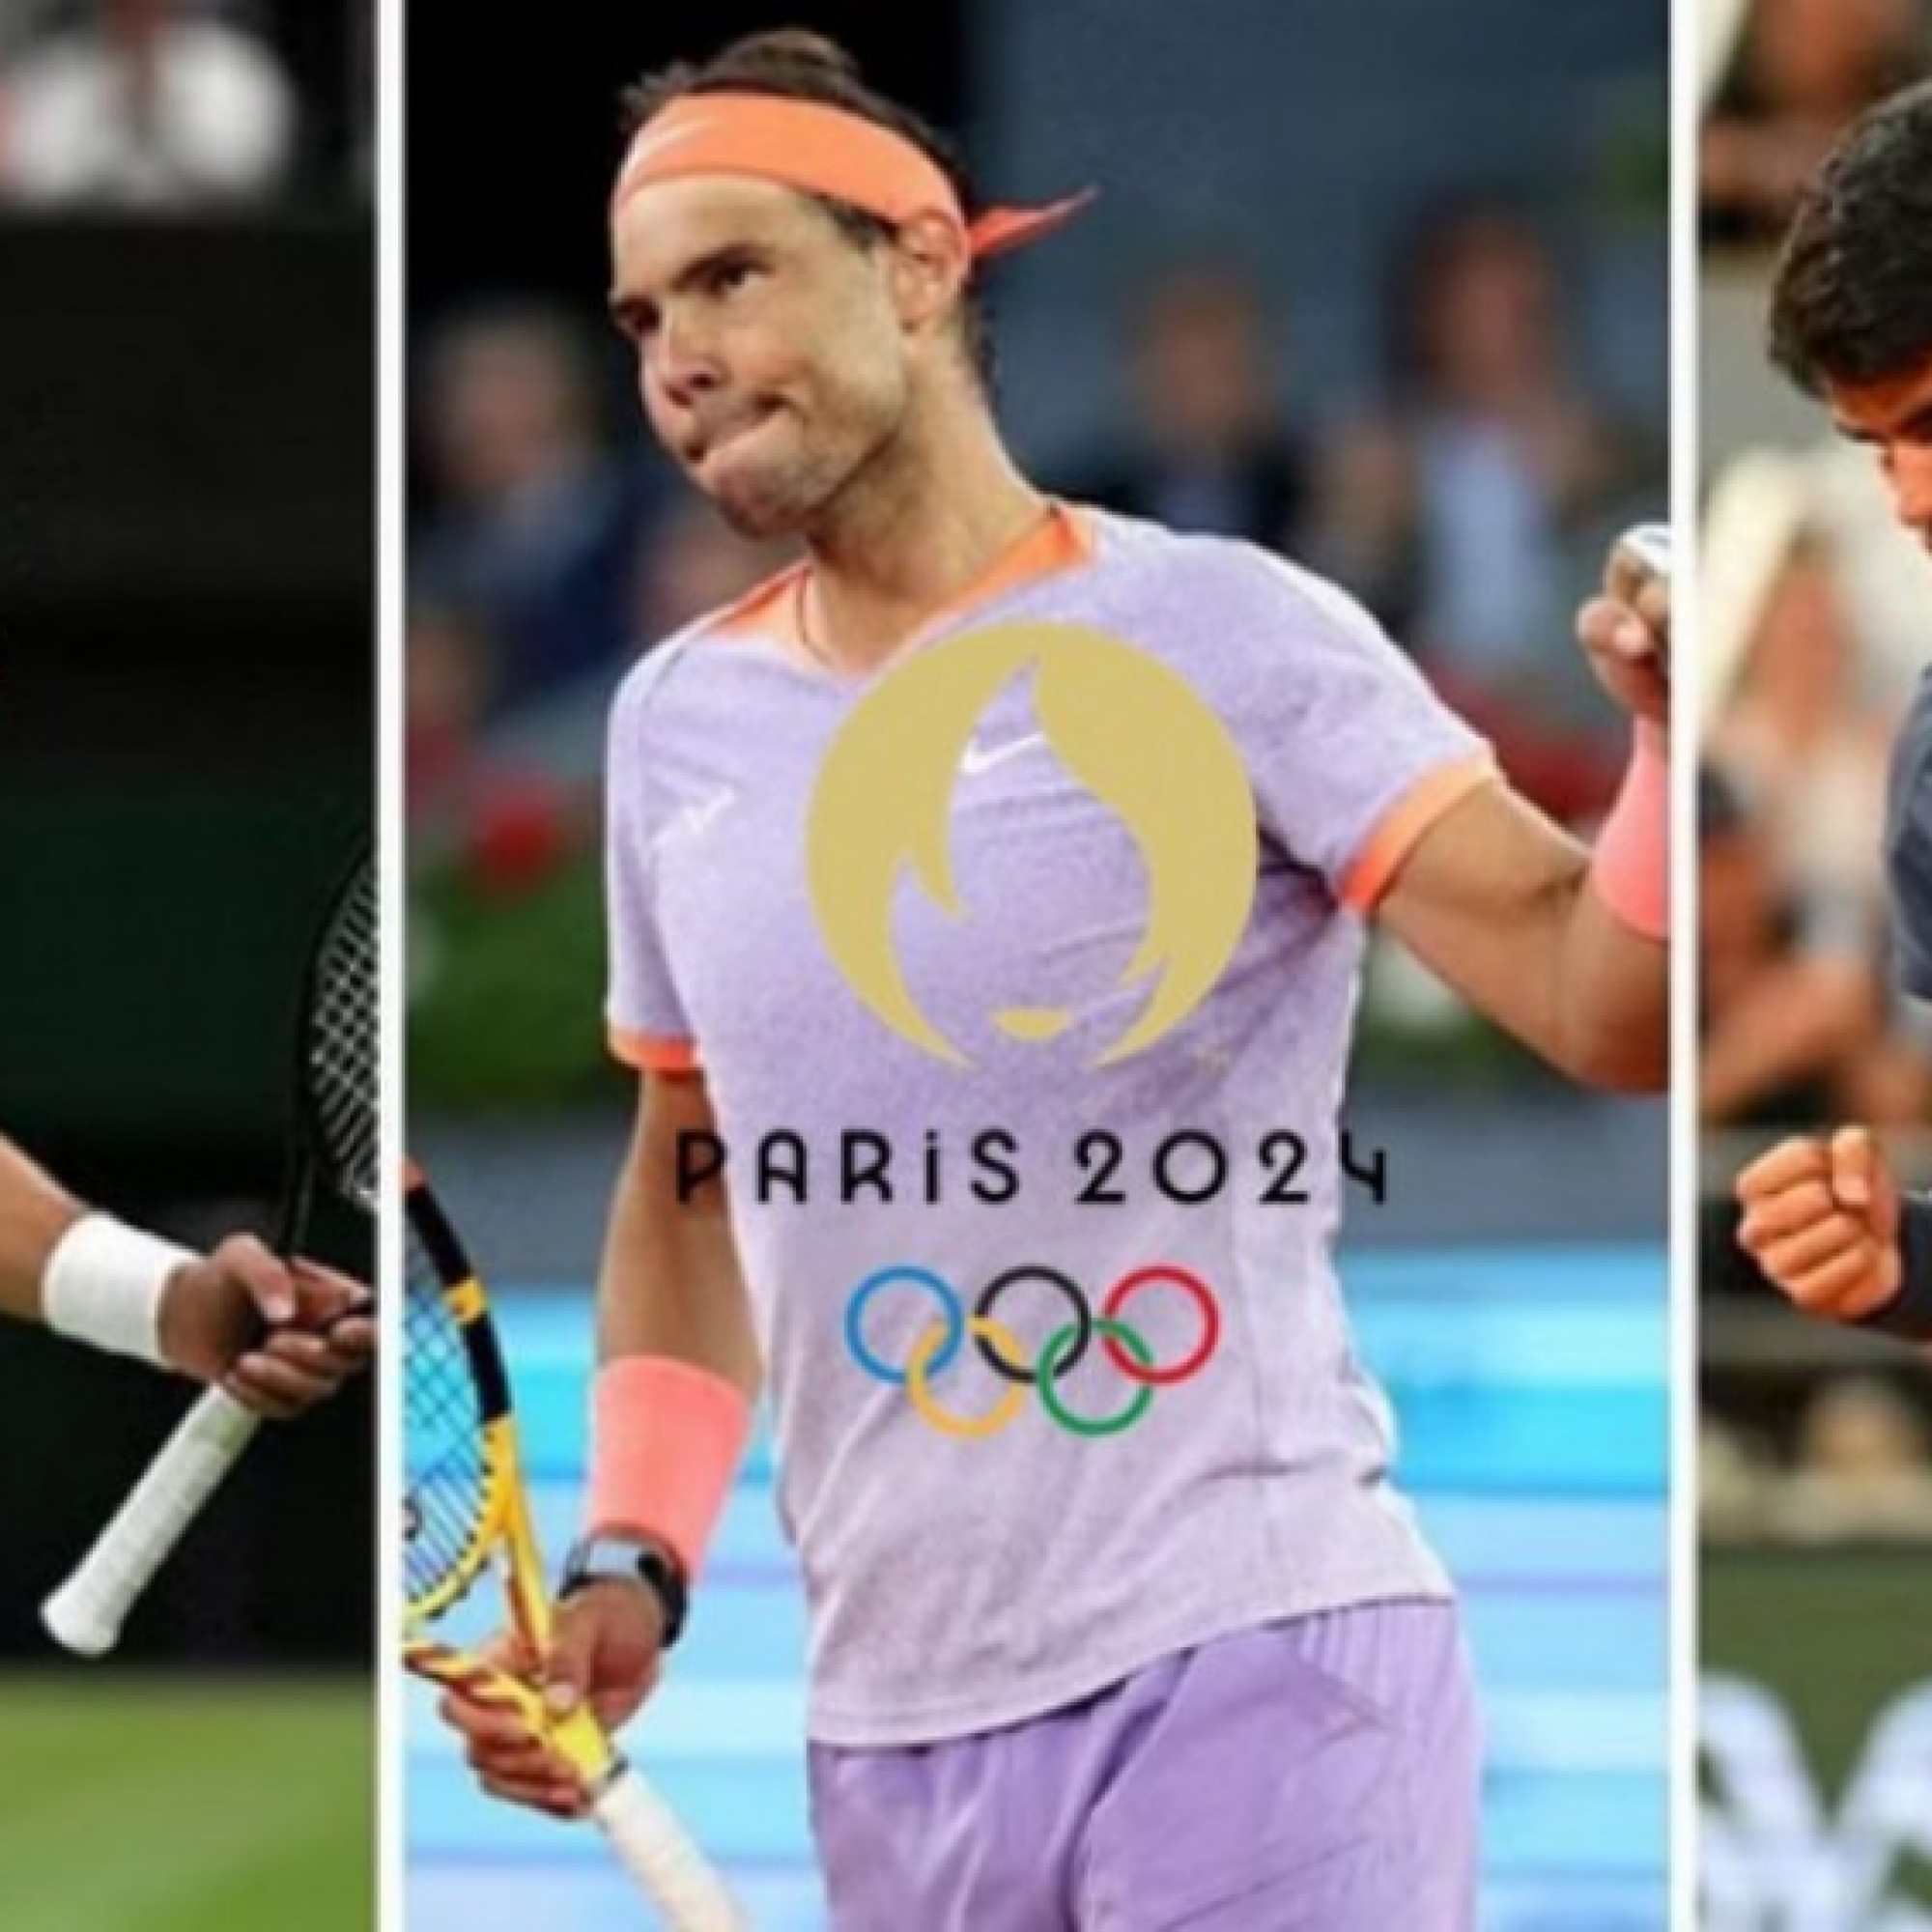  - Kết quả thi đấu tennis Olympic Paris 2024 mới nhất